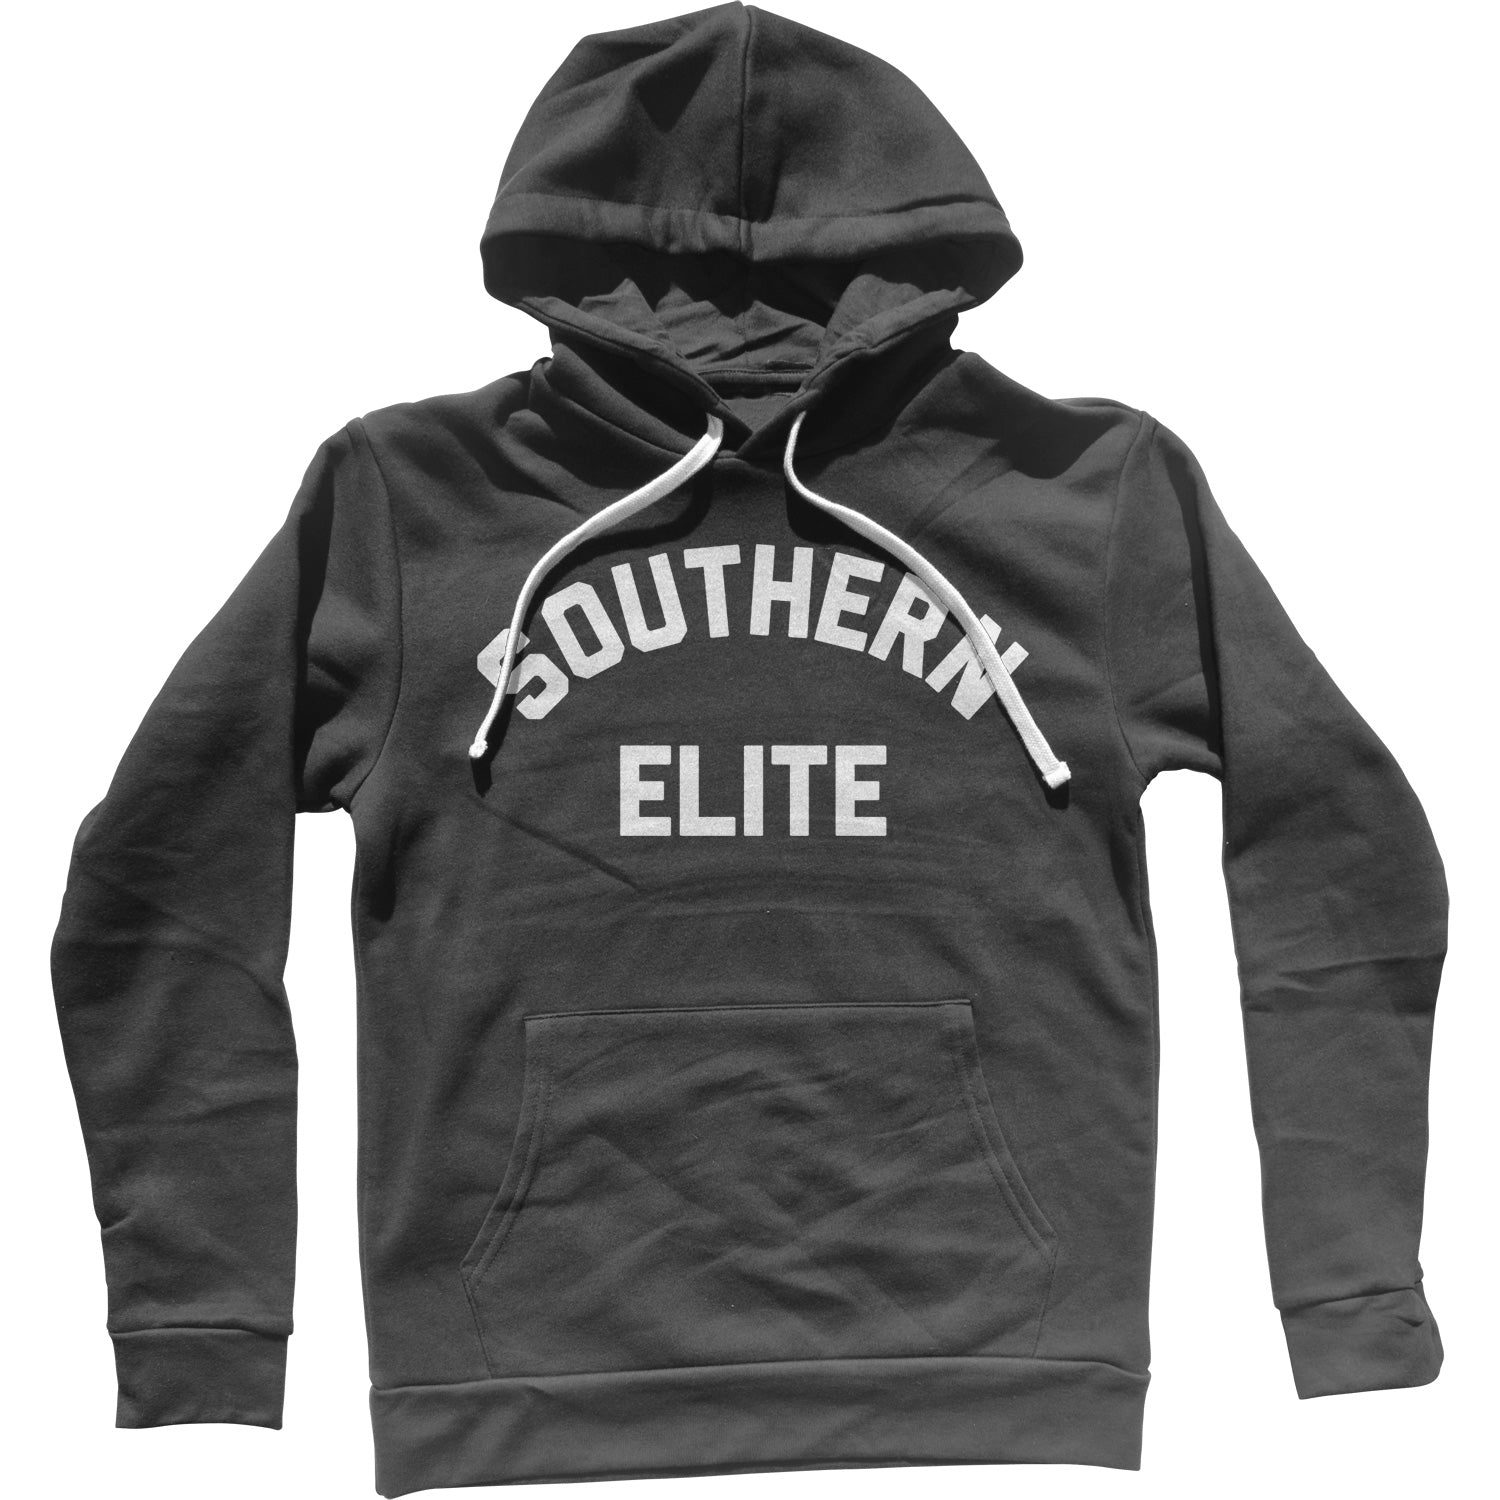 Southern Elite Unisex Hoodie